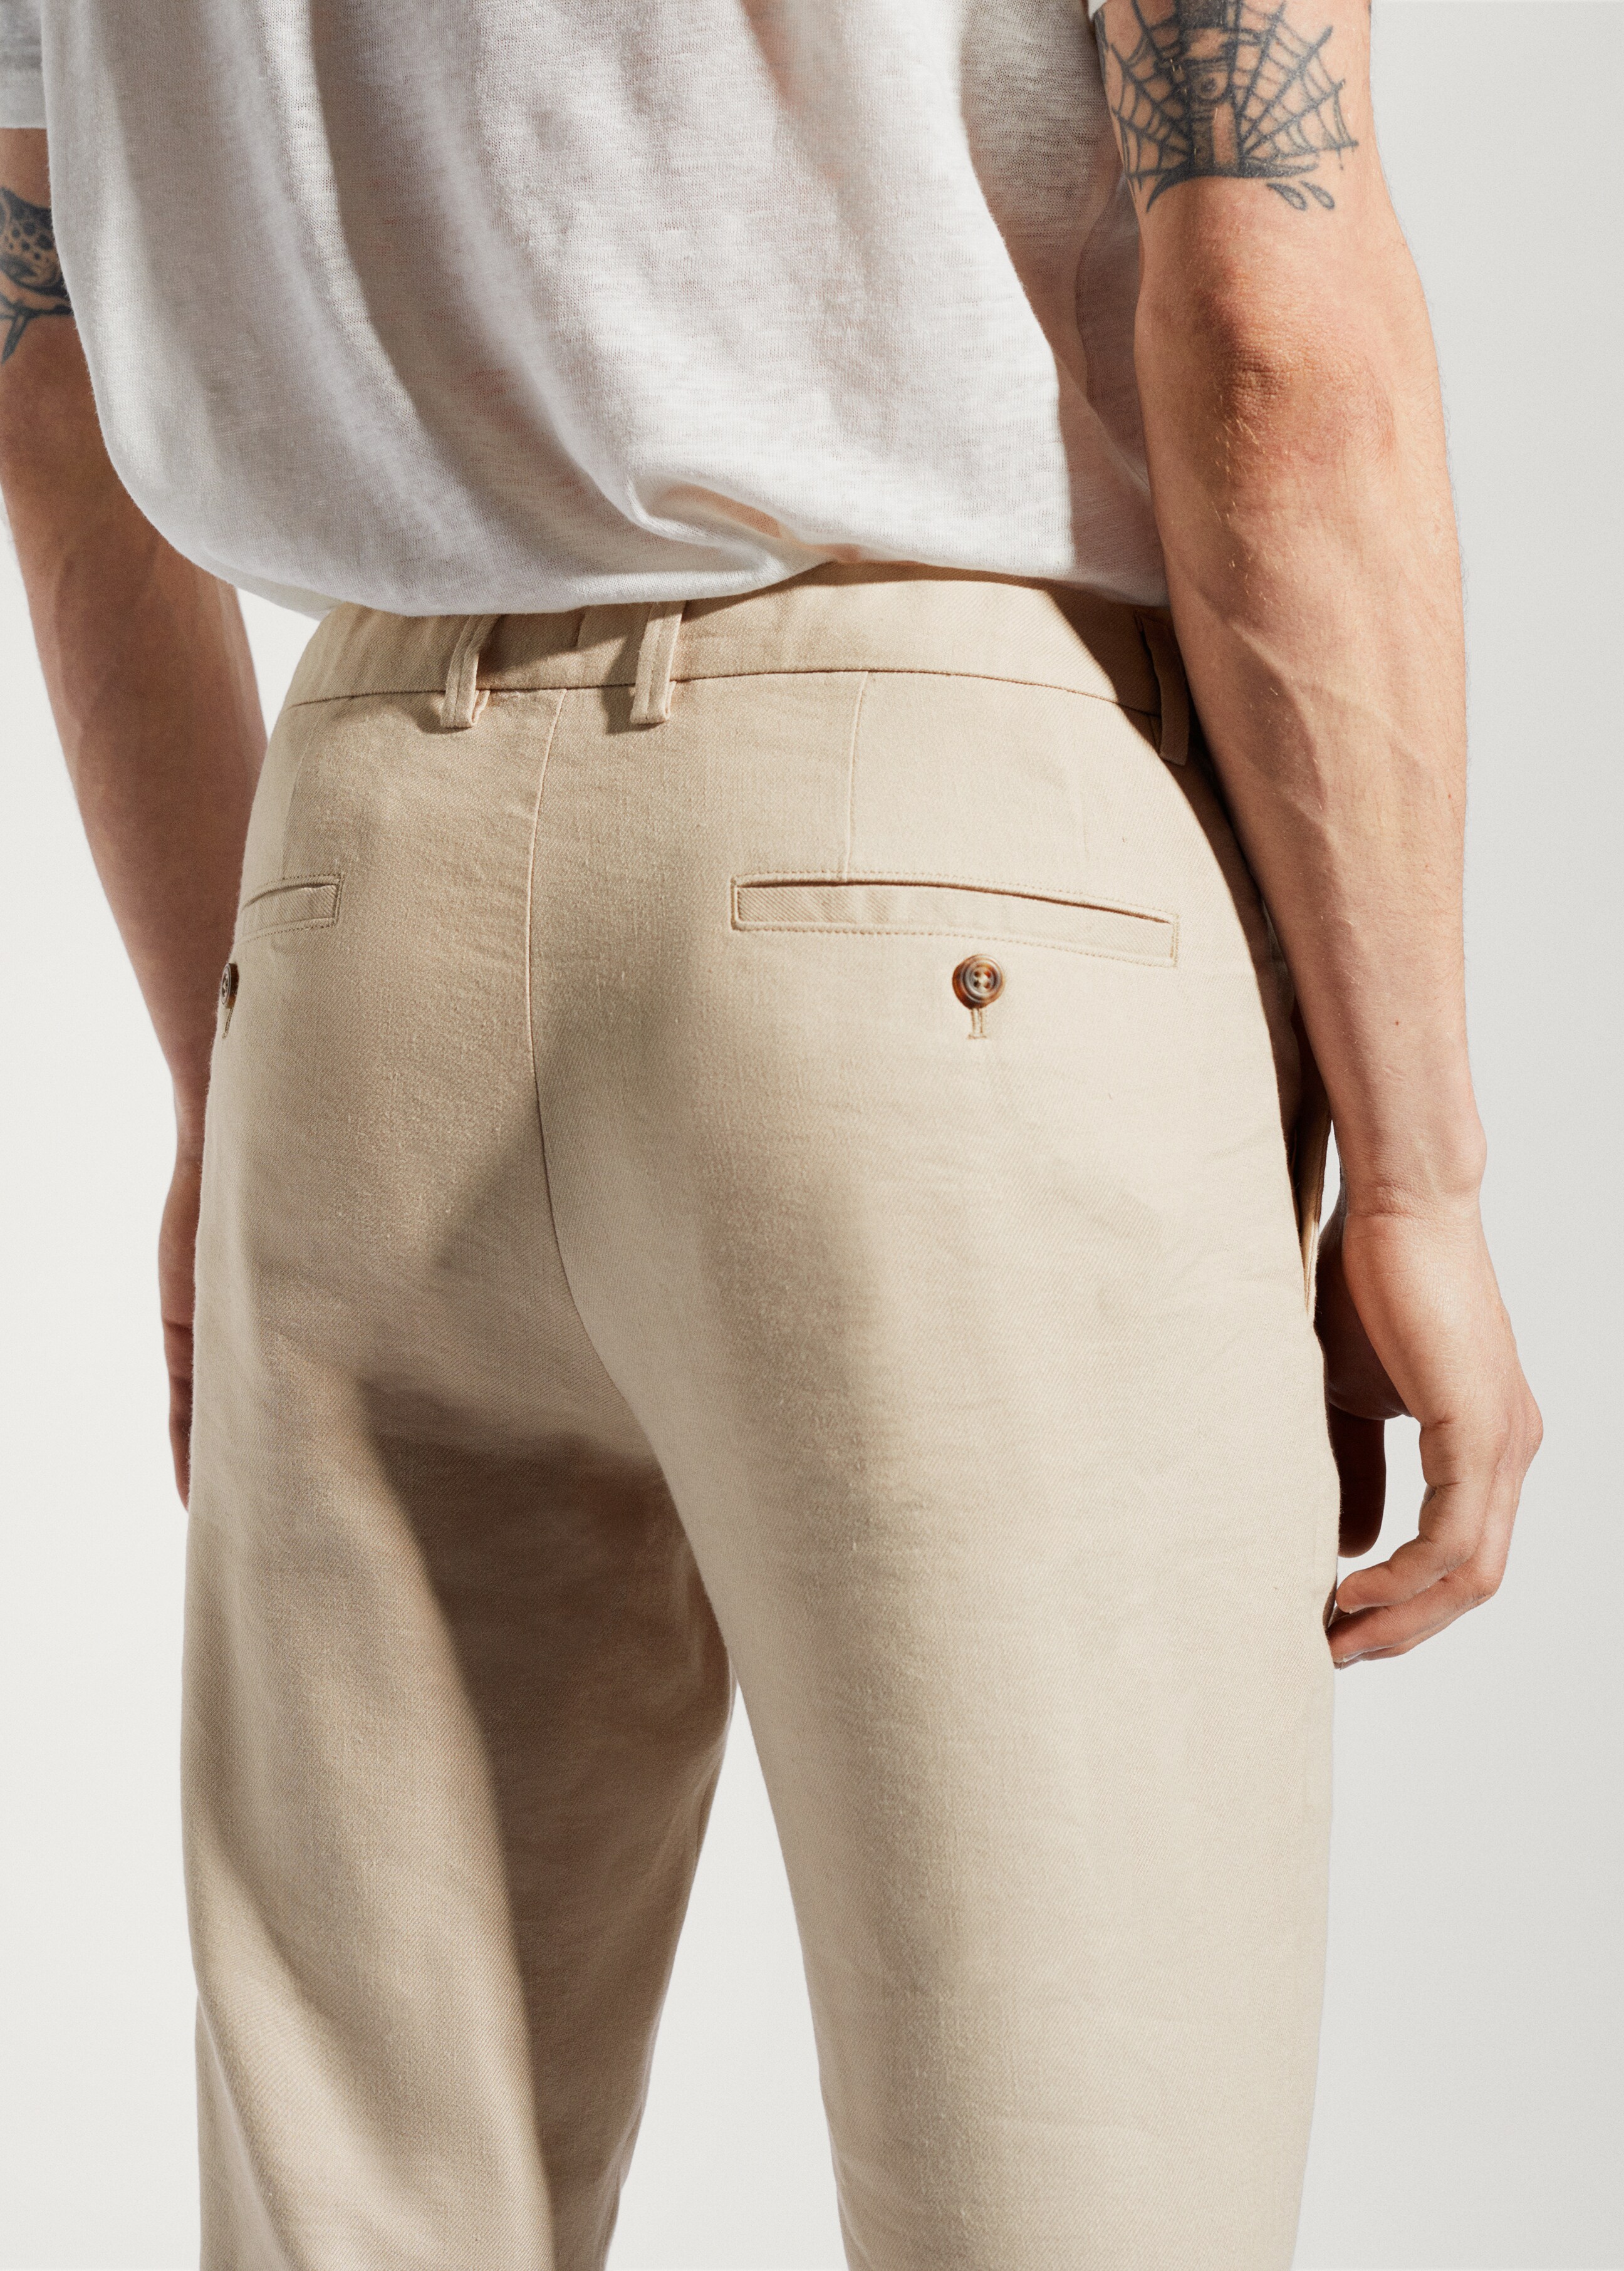 Pantalón slim fit lino cordón interior - Detalle del artículo 6